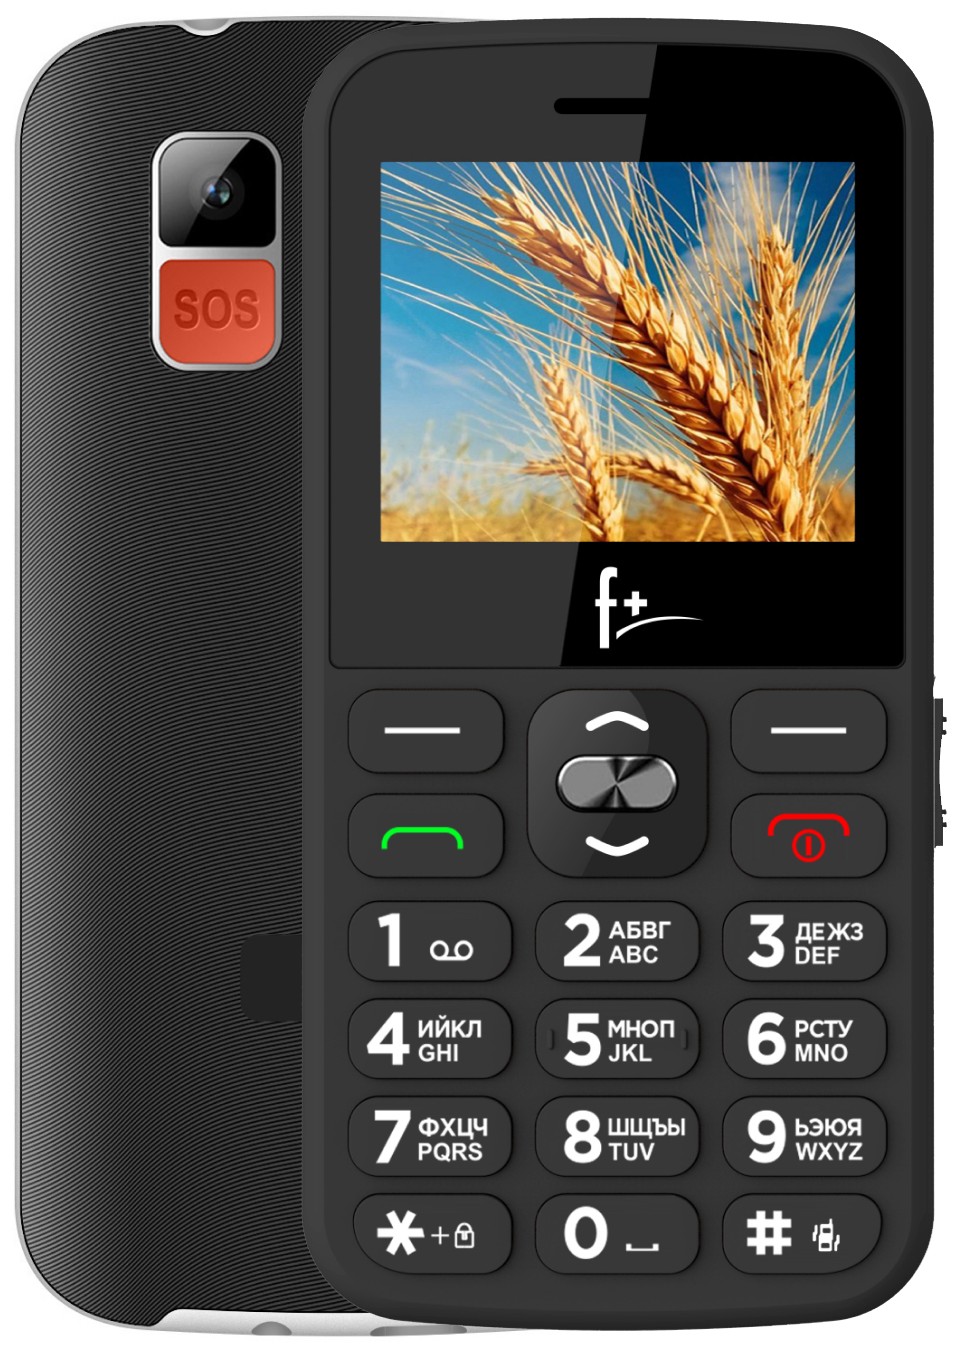 Мобильный телефон F+ Ezzy 5, 2.2" 176x220 TN, MediaTek MT6261D, BT, 1xCam, 2-Sim, 1000 мА·ч, USB Type-C, Nucleus, черный (Ezzy5 Black)